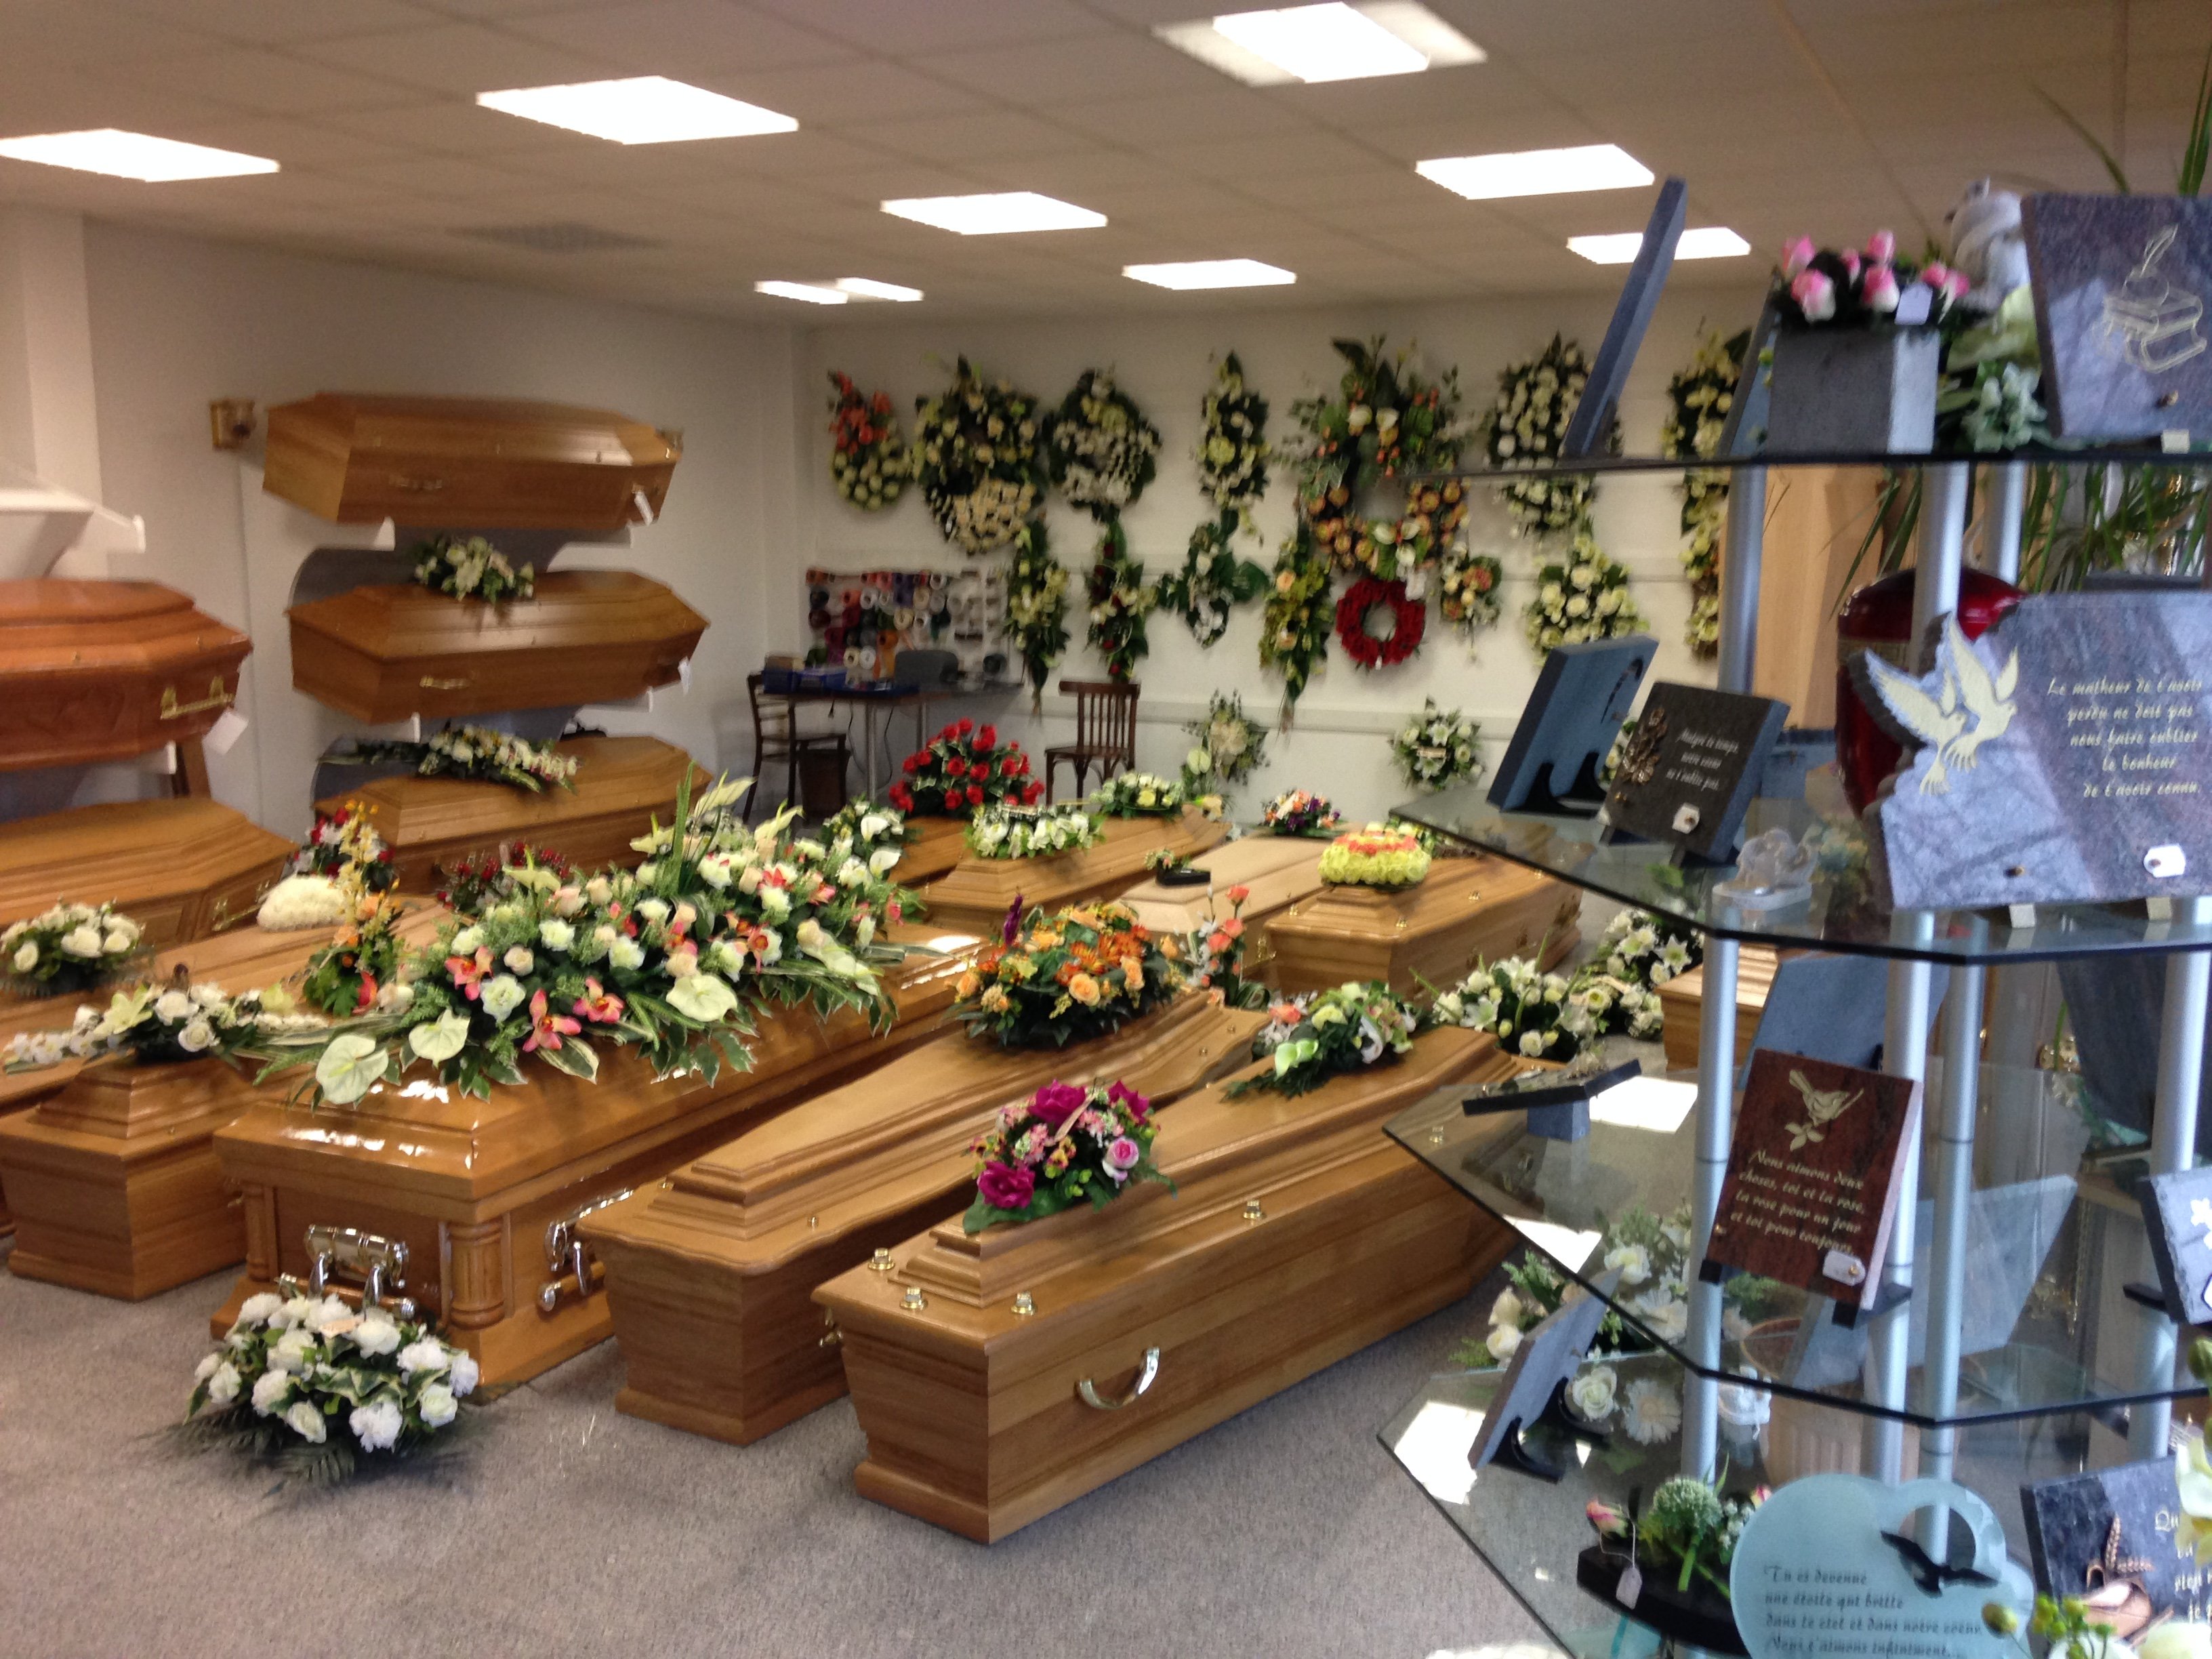 Les pompes funèbres Adam-hospital proposent des urnes, fleurs et plaques funéraires pour orner les cercueils